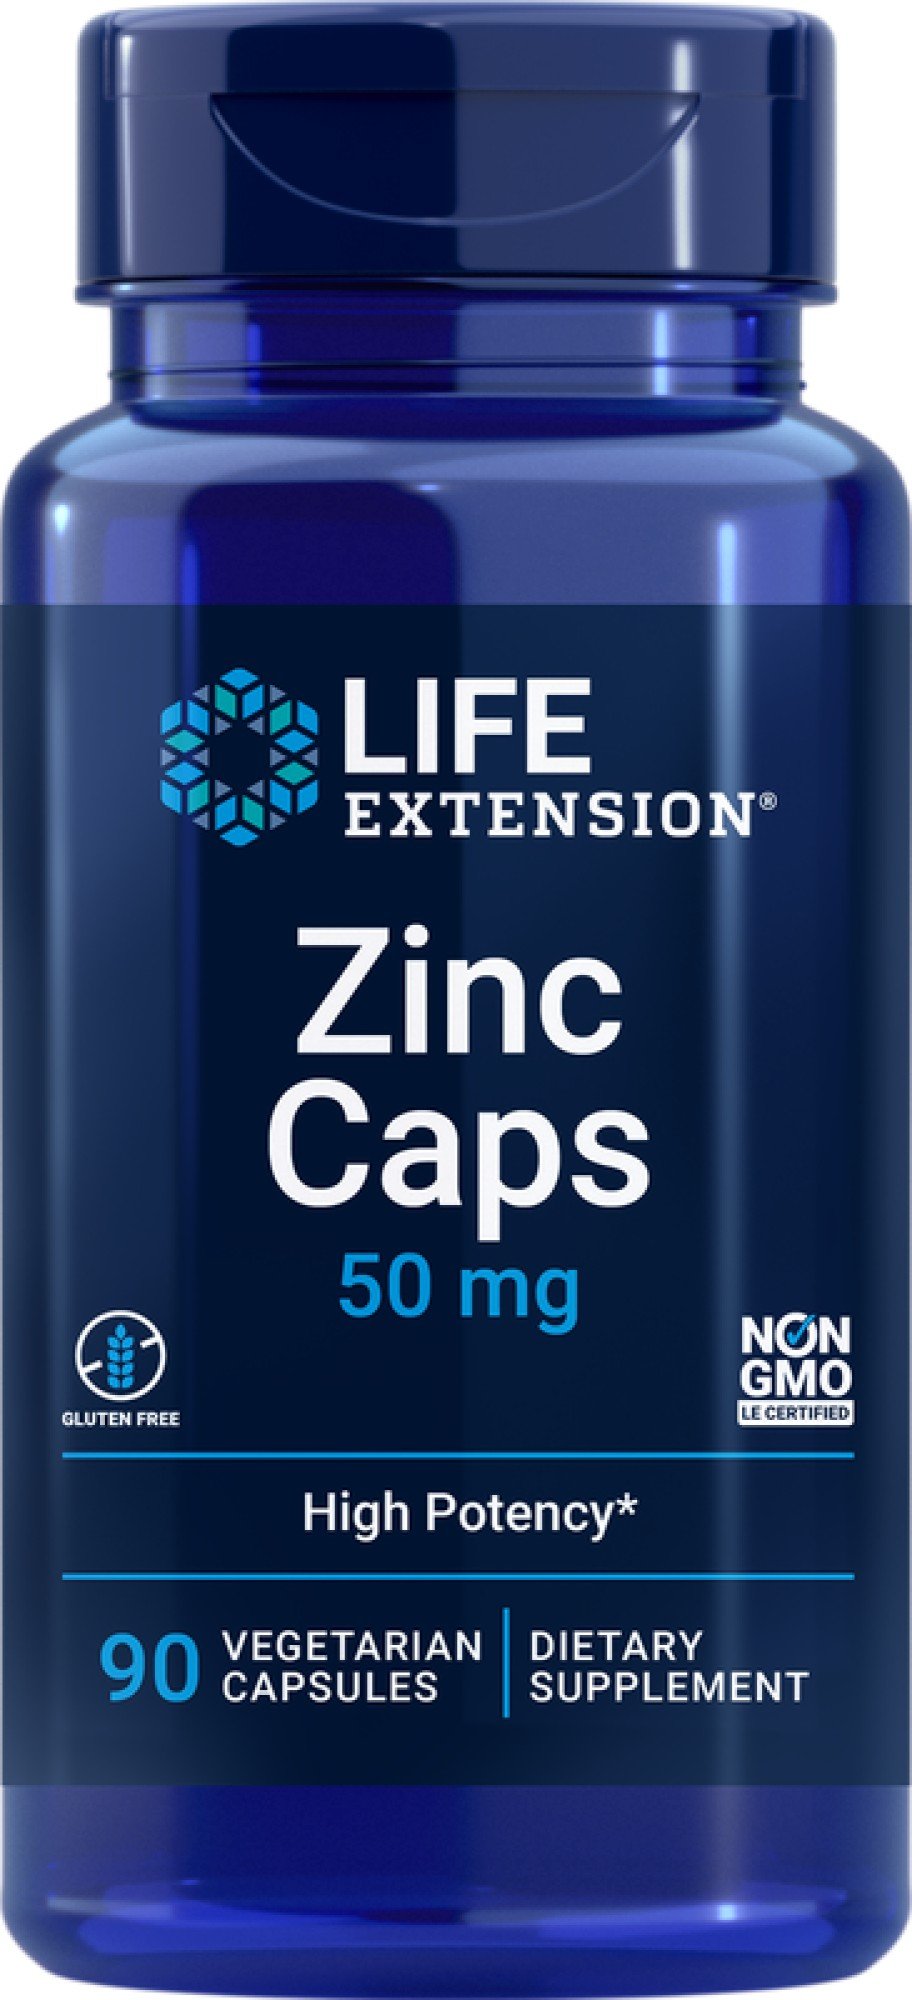 Zinc Caps | Life Extension | 50 milligrams Zinc | Gluten Free | Non GMO | Dietary Supplement | 90 VegCaps | Capsules | VitaminLife